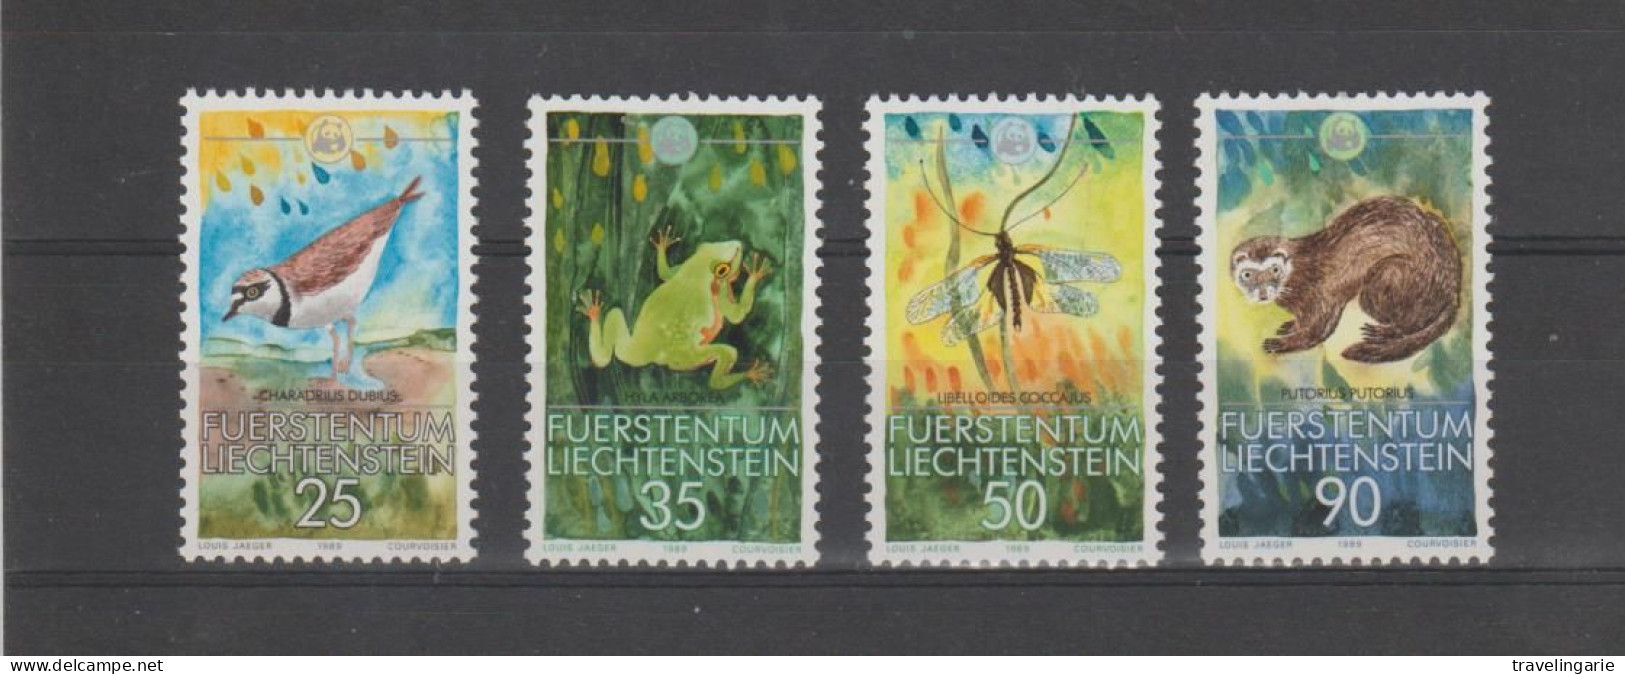 Liechtenstein 1989 WWF Nature Protection ** MNH - Ongebruikt